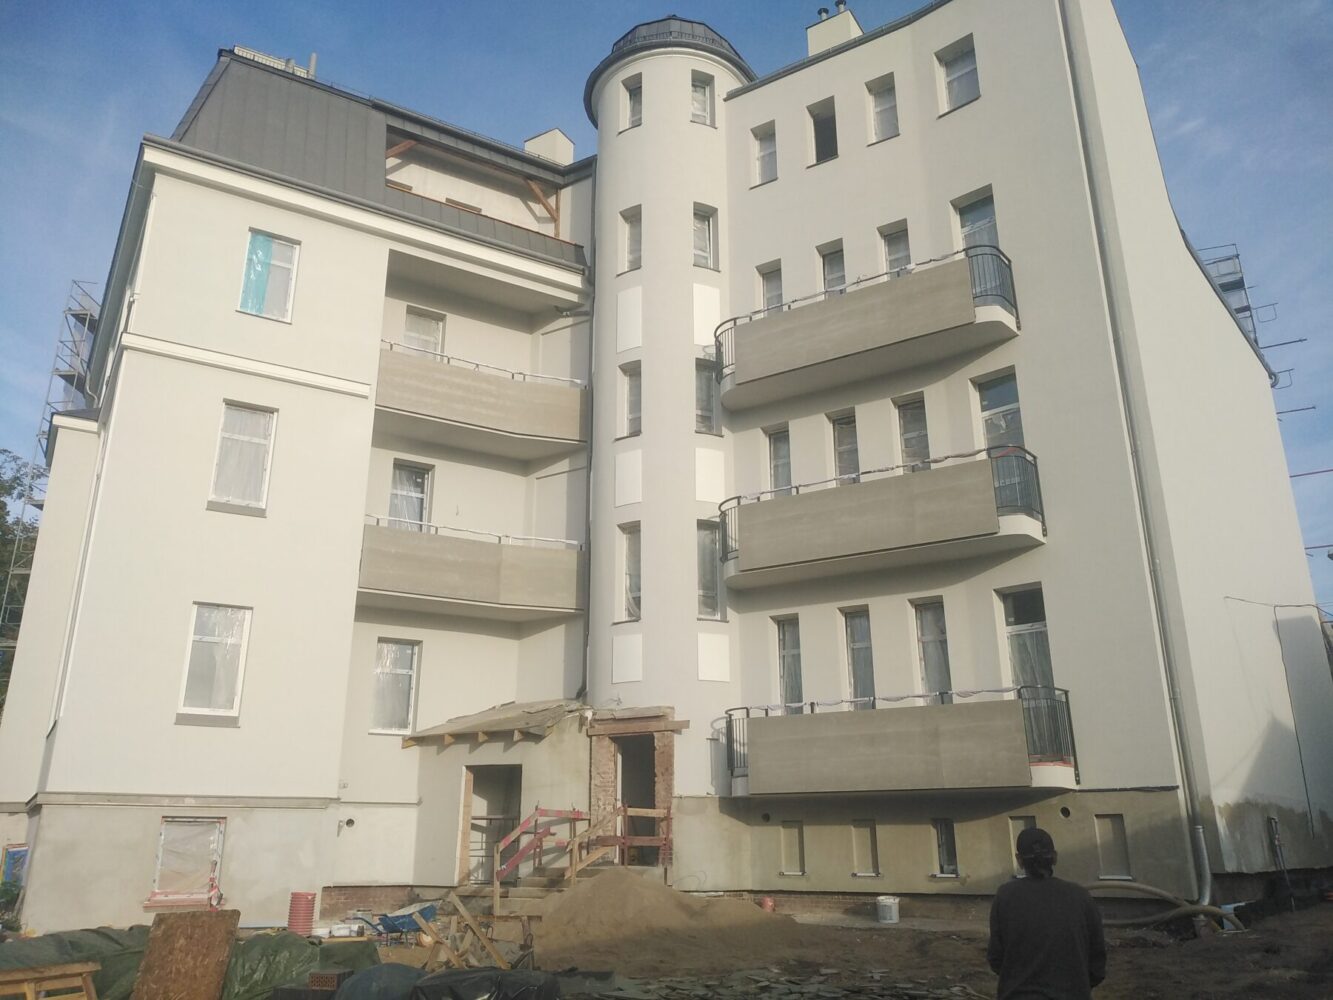 Budynek mieszkalny – Pl. Łużycki 1 w Żarach